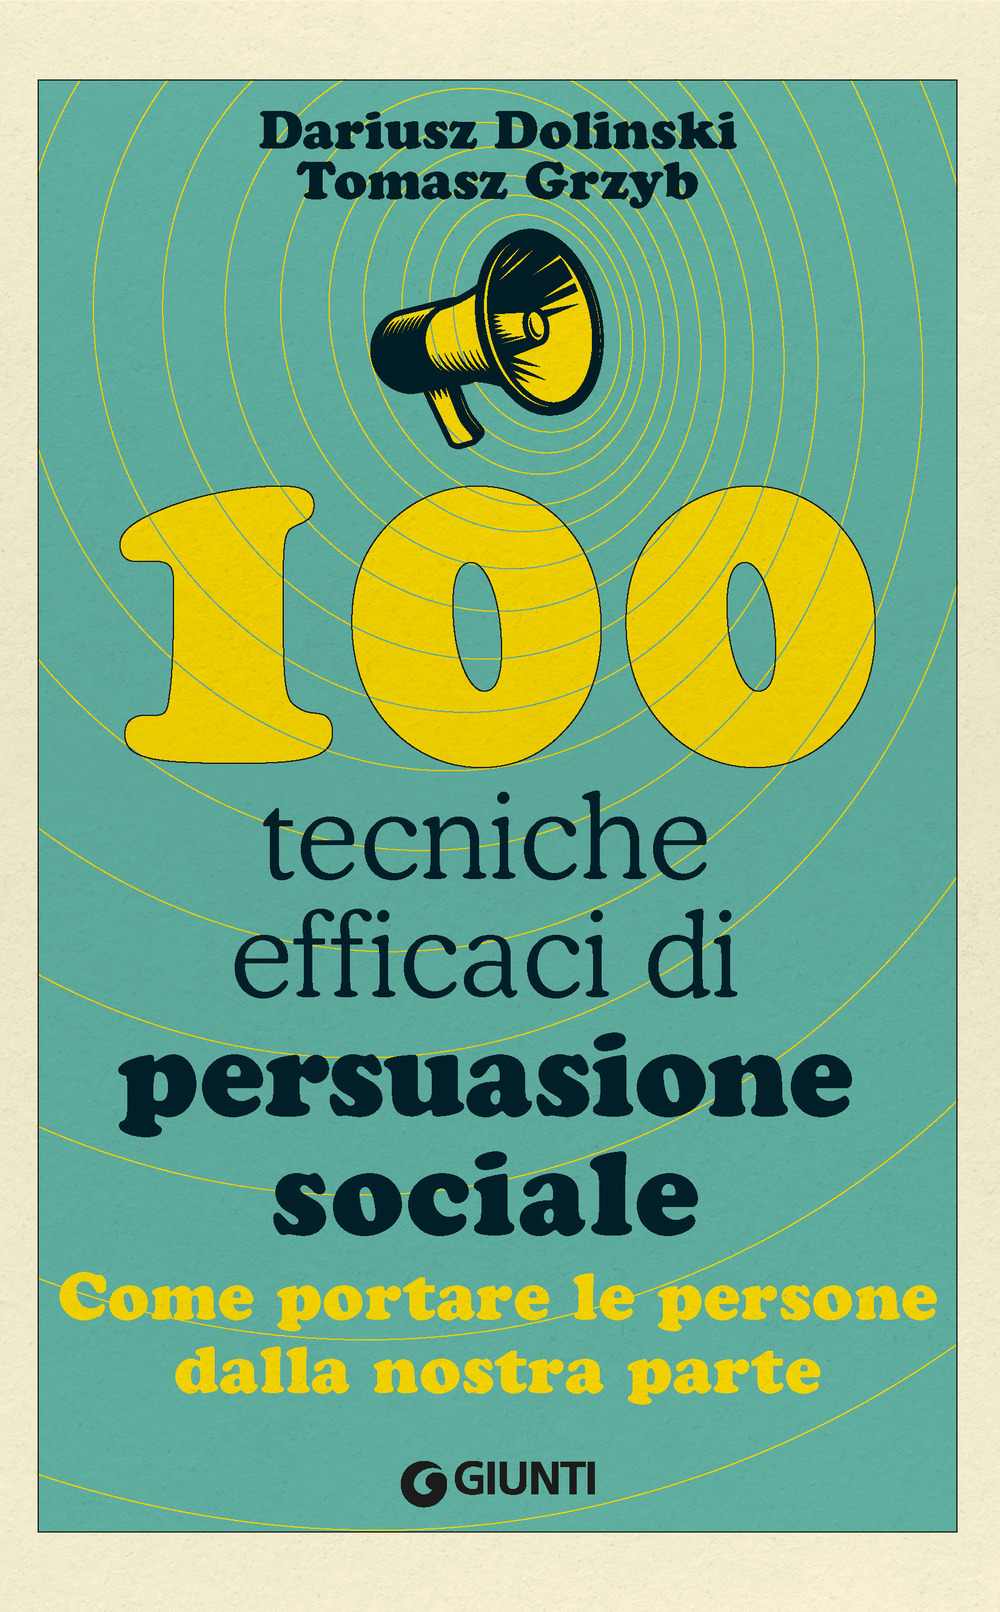 100 tecniche efficaci di persuasione sociale. Come portare le persone dalla nostra parte